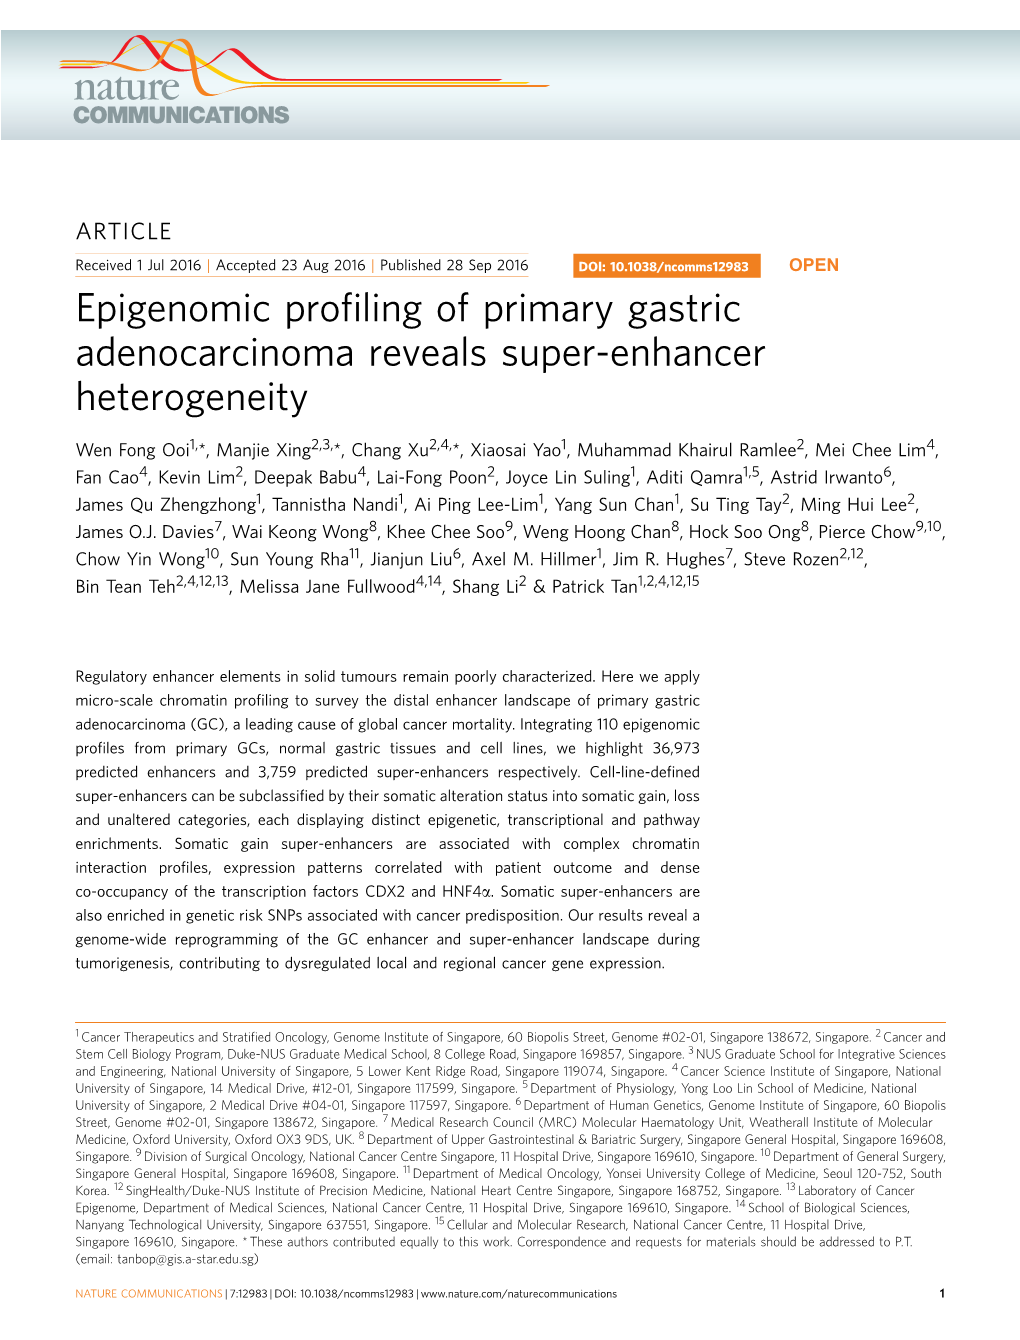 Epigenomic Profiling of Primary Gastric Adenocarcinoma Reveals Super